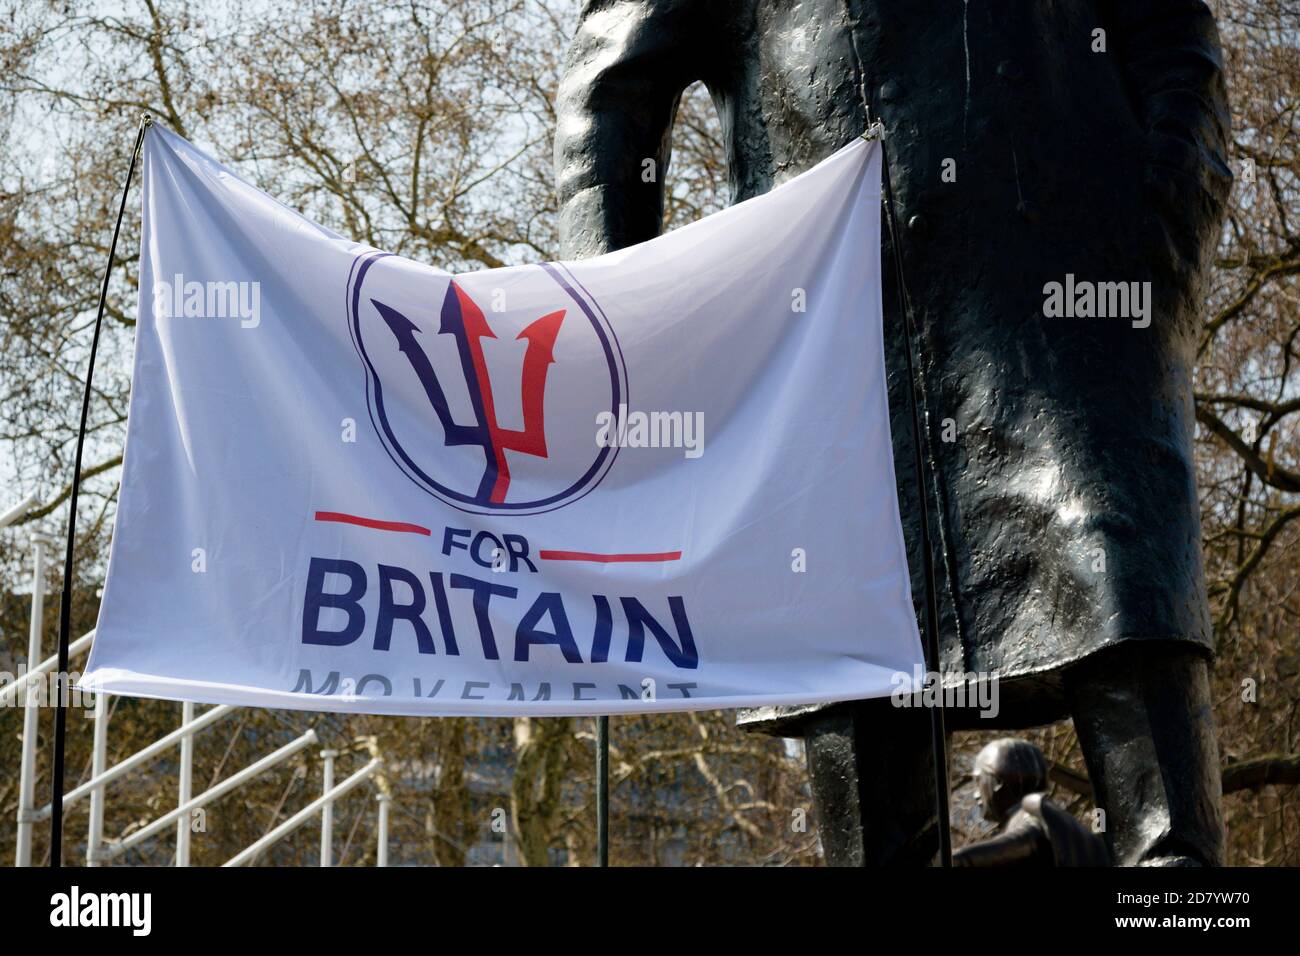 Londra, Regno Unito, 29 marzo 2019:- manifestanti Pro Brexit fuori dal Parlamento britannico il giorno in cui il Regno Unito avrebbe dovuto lasciare l’Unione europea f Foto Stock